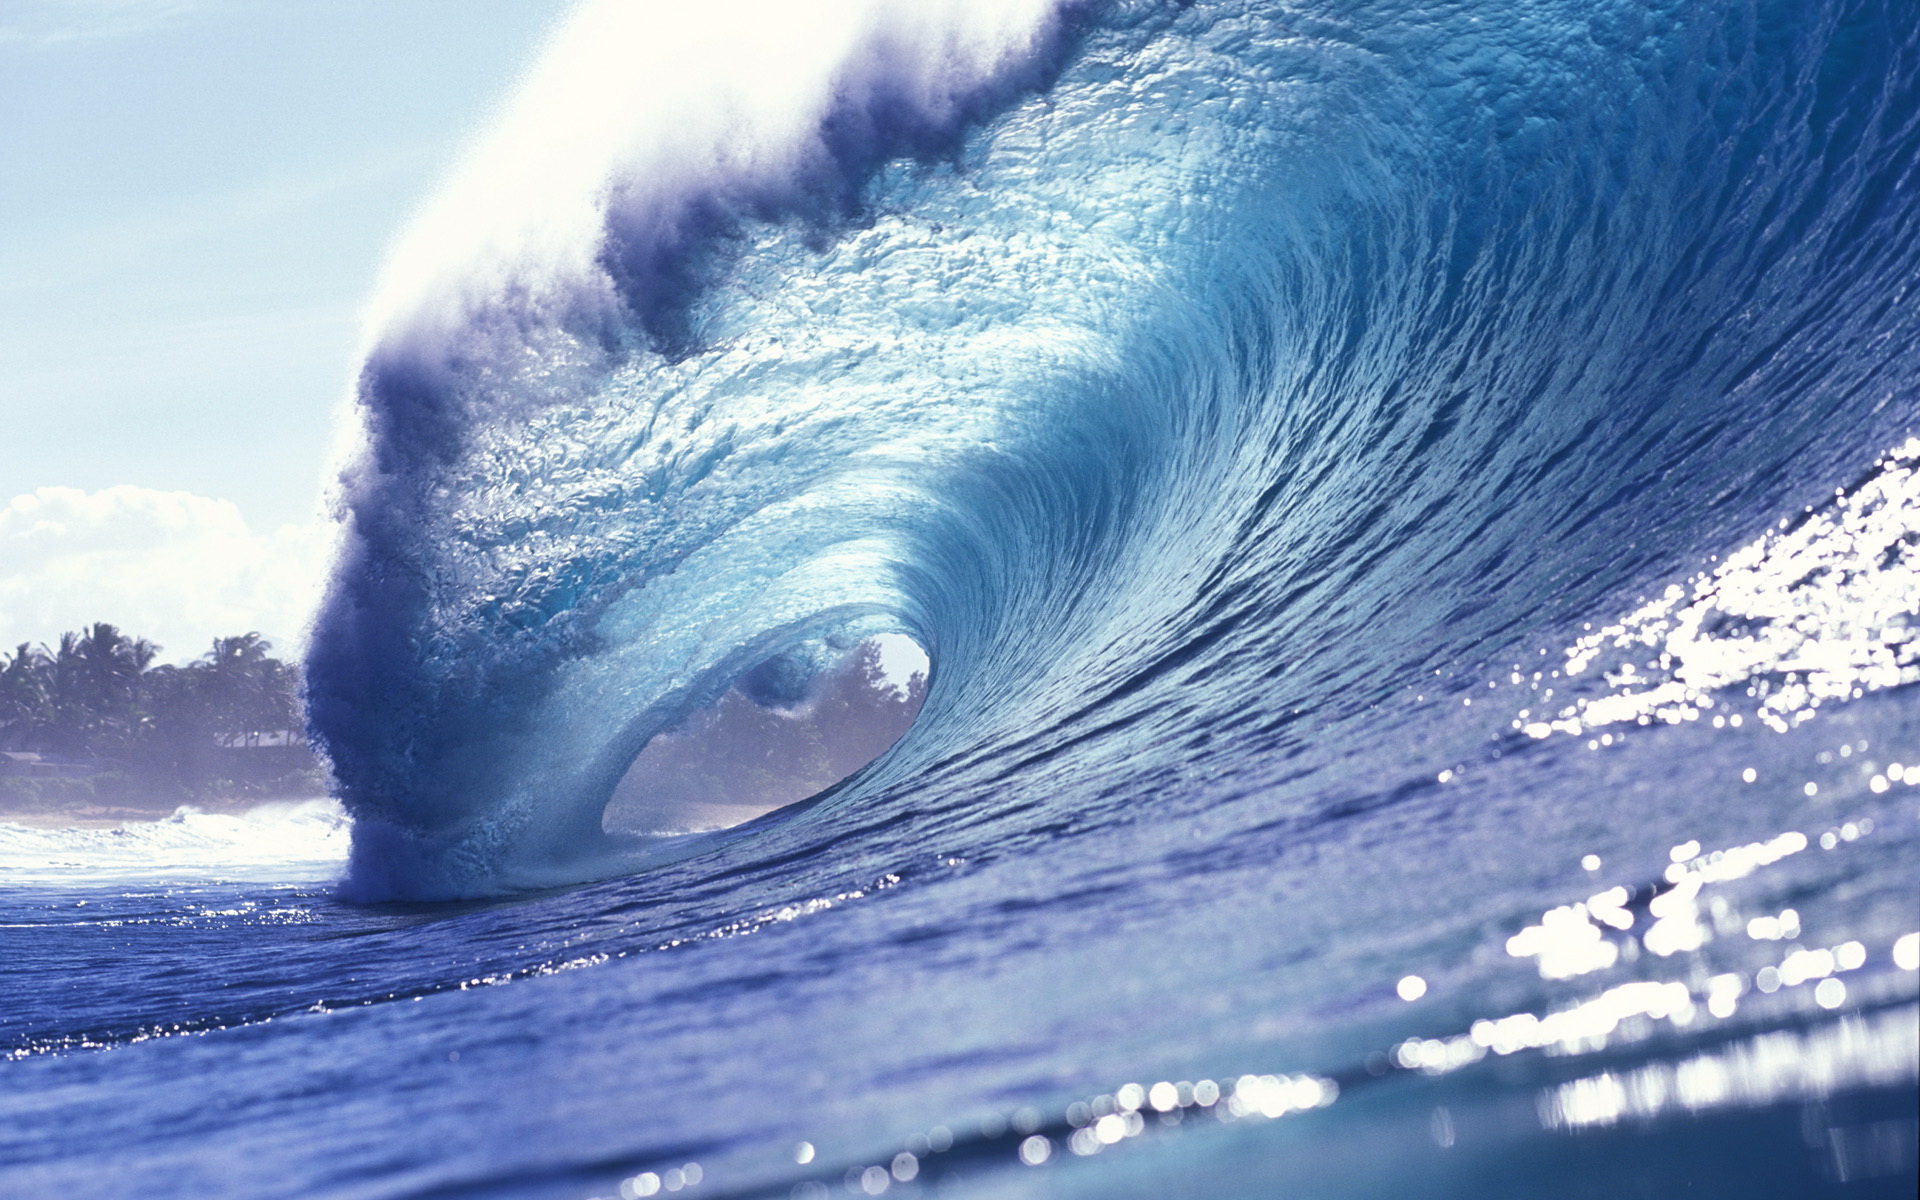 Hình nền sóng: Hãy thưởng thức những bức ảnh về sóng biển mạnh mẽ, tạo ra những âm thanh tuyệt vời và đưa bạn đến với cảm giác thư giãn và sảng khoái. Hình ảnh này sẽ cho bạn cảm giác như đang được chìm đắm trong tầm nhìn duyên dáng của biển cả.